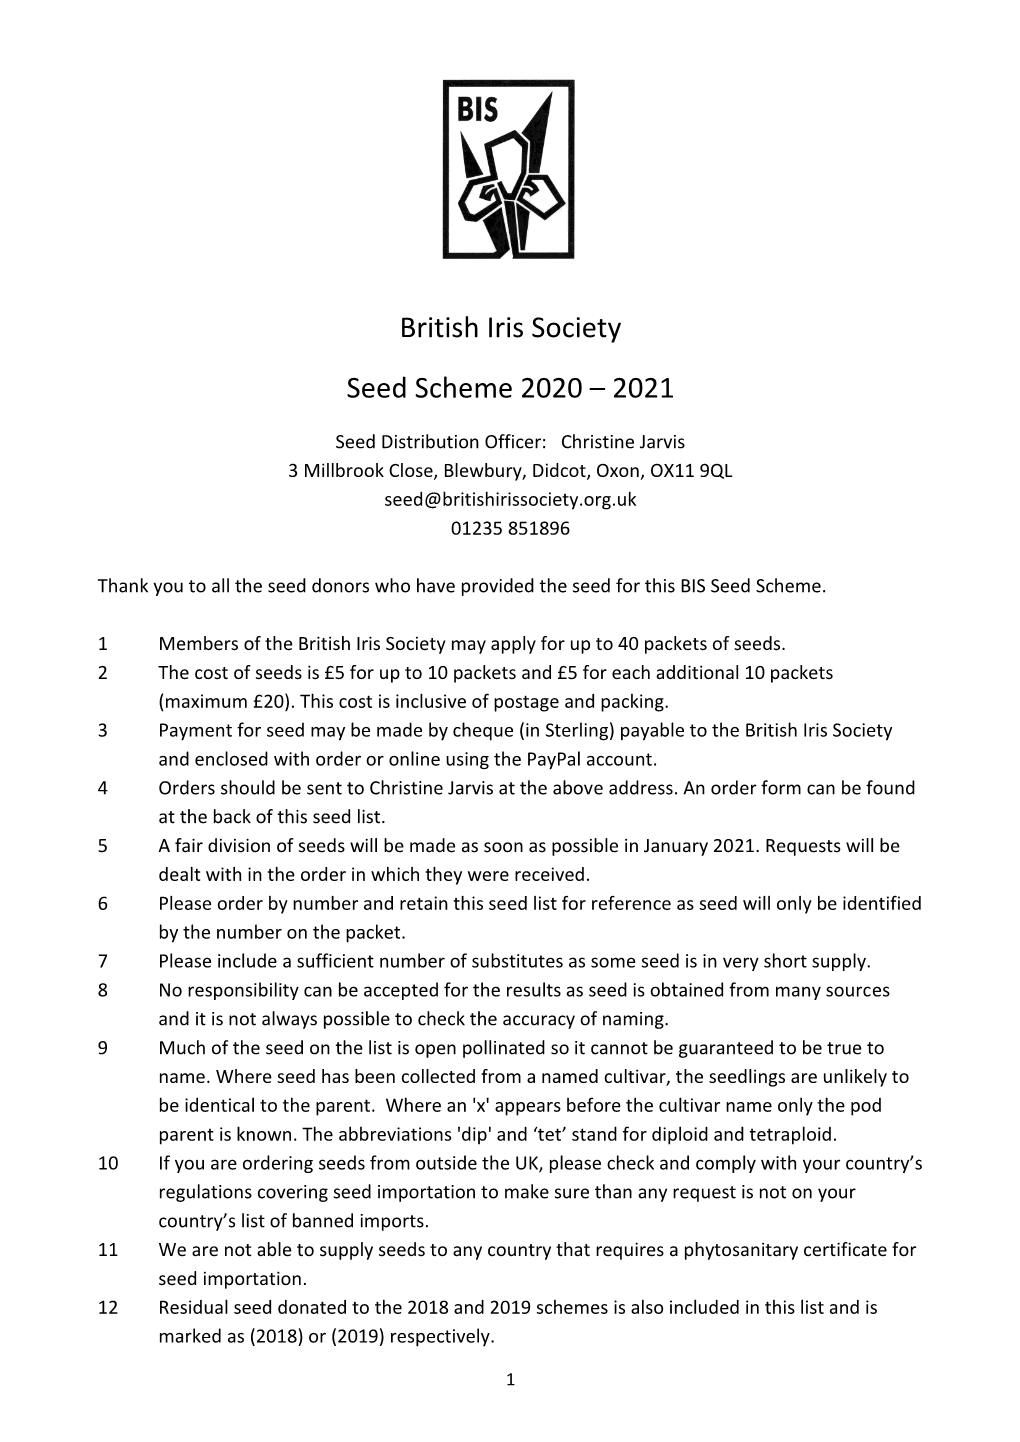 BIS Seed List 2020 2021 Plus Addendum